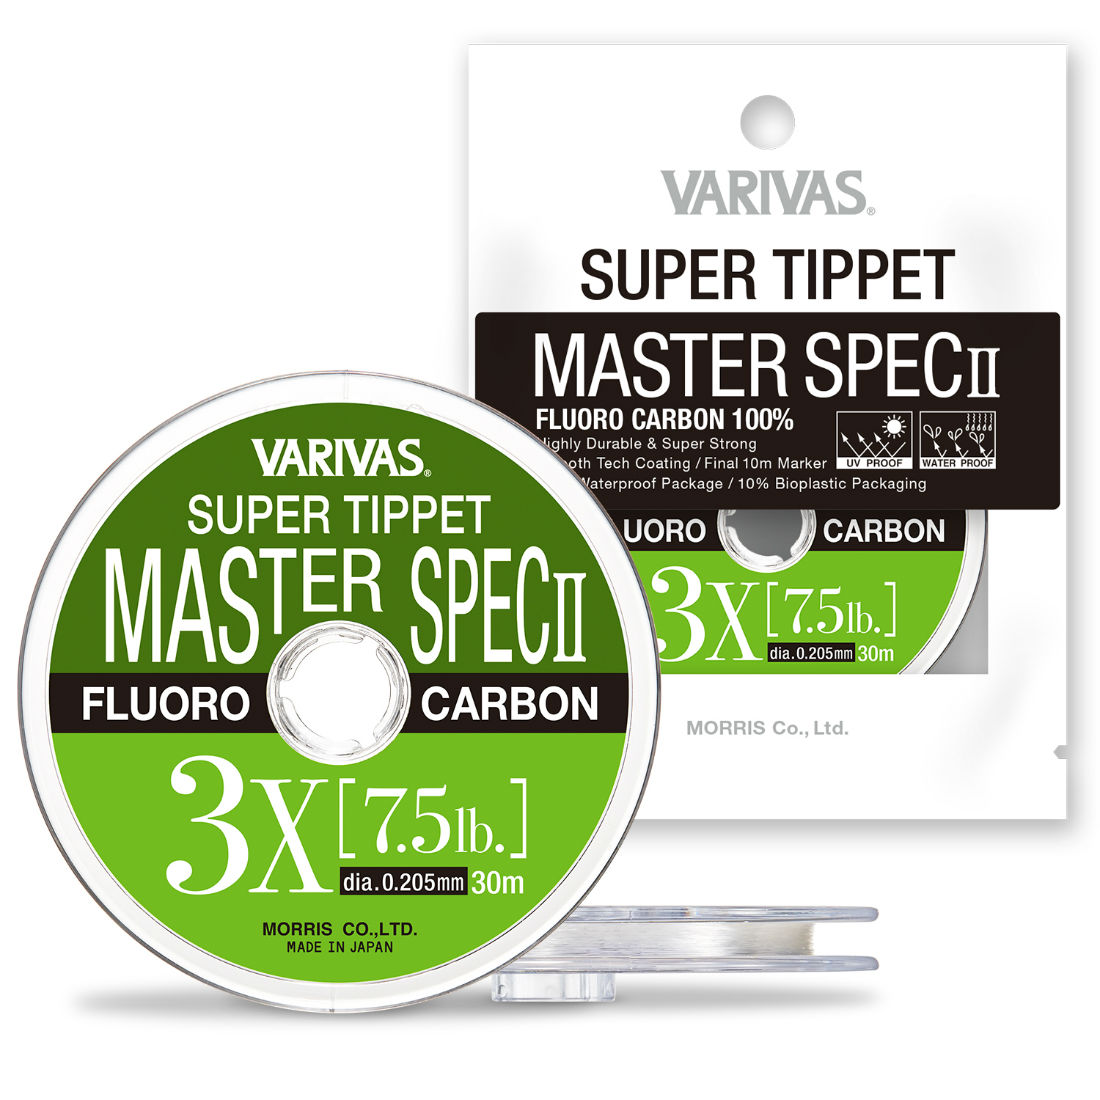 FIR SUPER TIPPET MASTER SPEC ll FLUORO 4X 30m 0.165mm 5.1lb